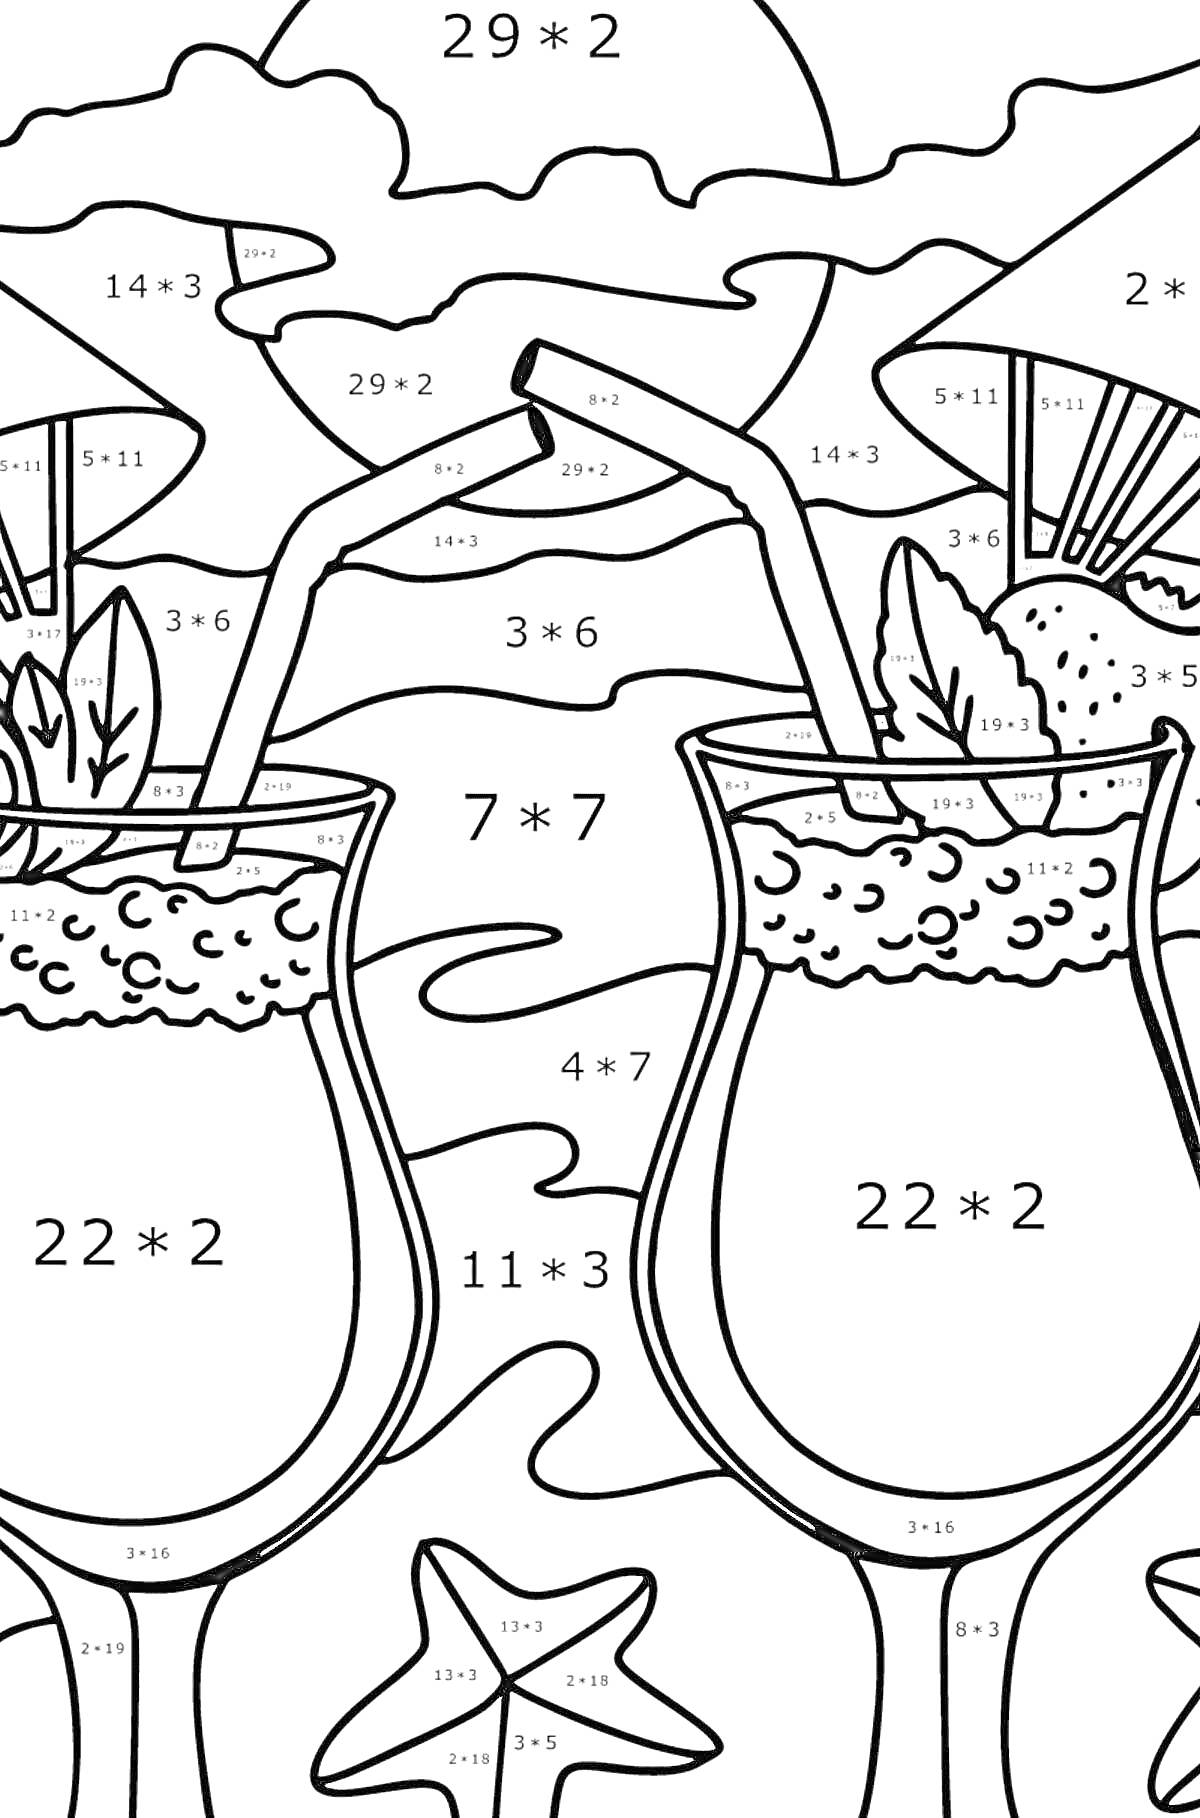 Два коктейля в бокалах с трубочками, кружочками льда и листьями мяты, ветка с лаймом, звездочка